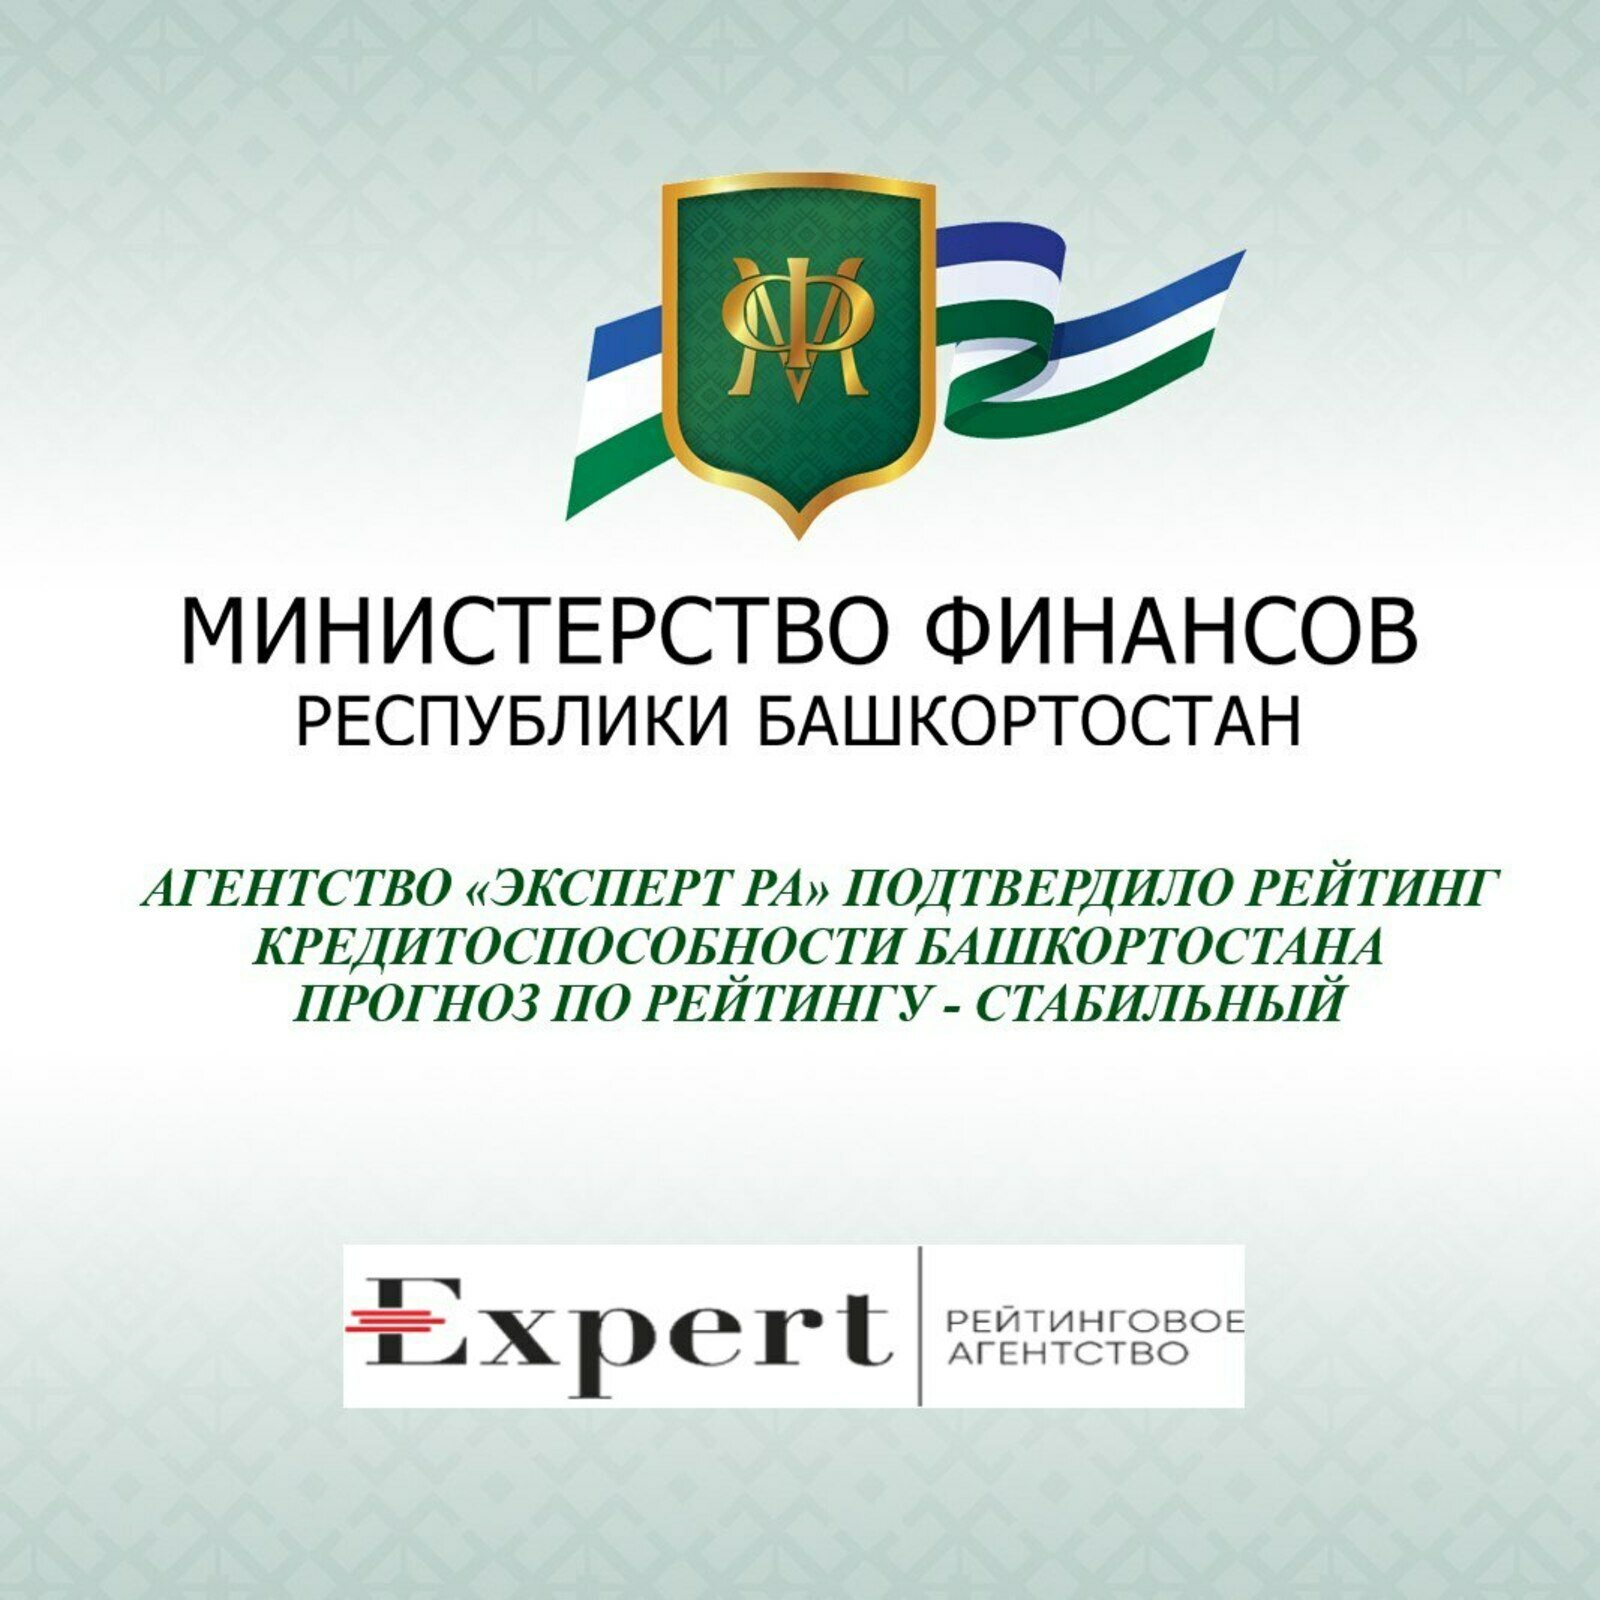 Агентство «Эксперт РА» подтвердило рейтинг кредитоспособности Республики Башкортостан прогноз по рейтингу – стабильный